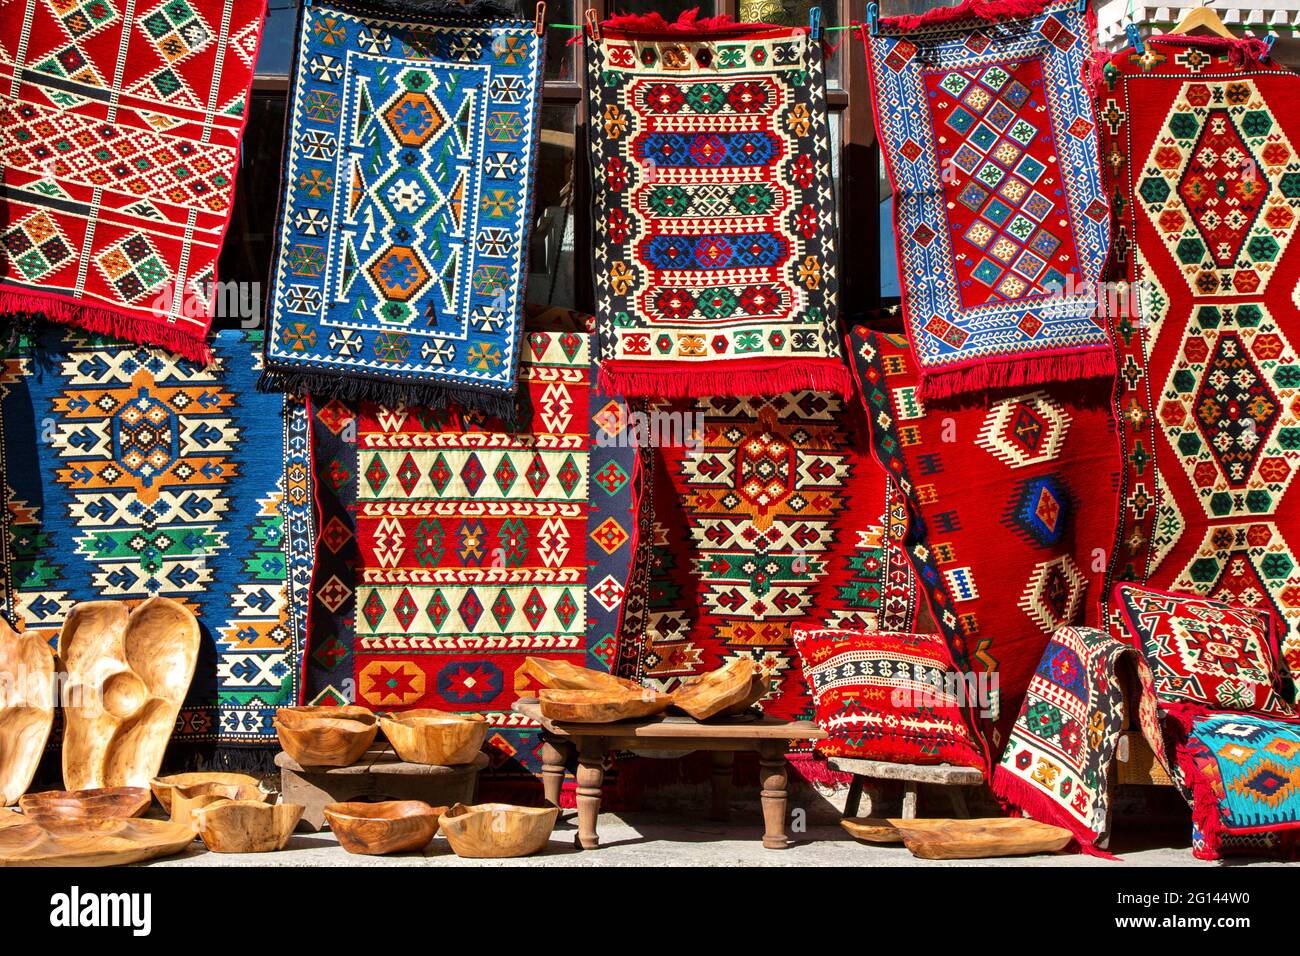 Albanische Teppiche und Teppiche, Albanien Stockfotografie - Alamy